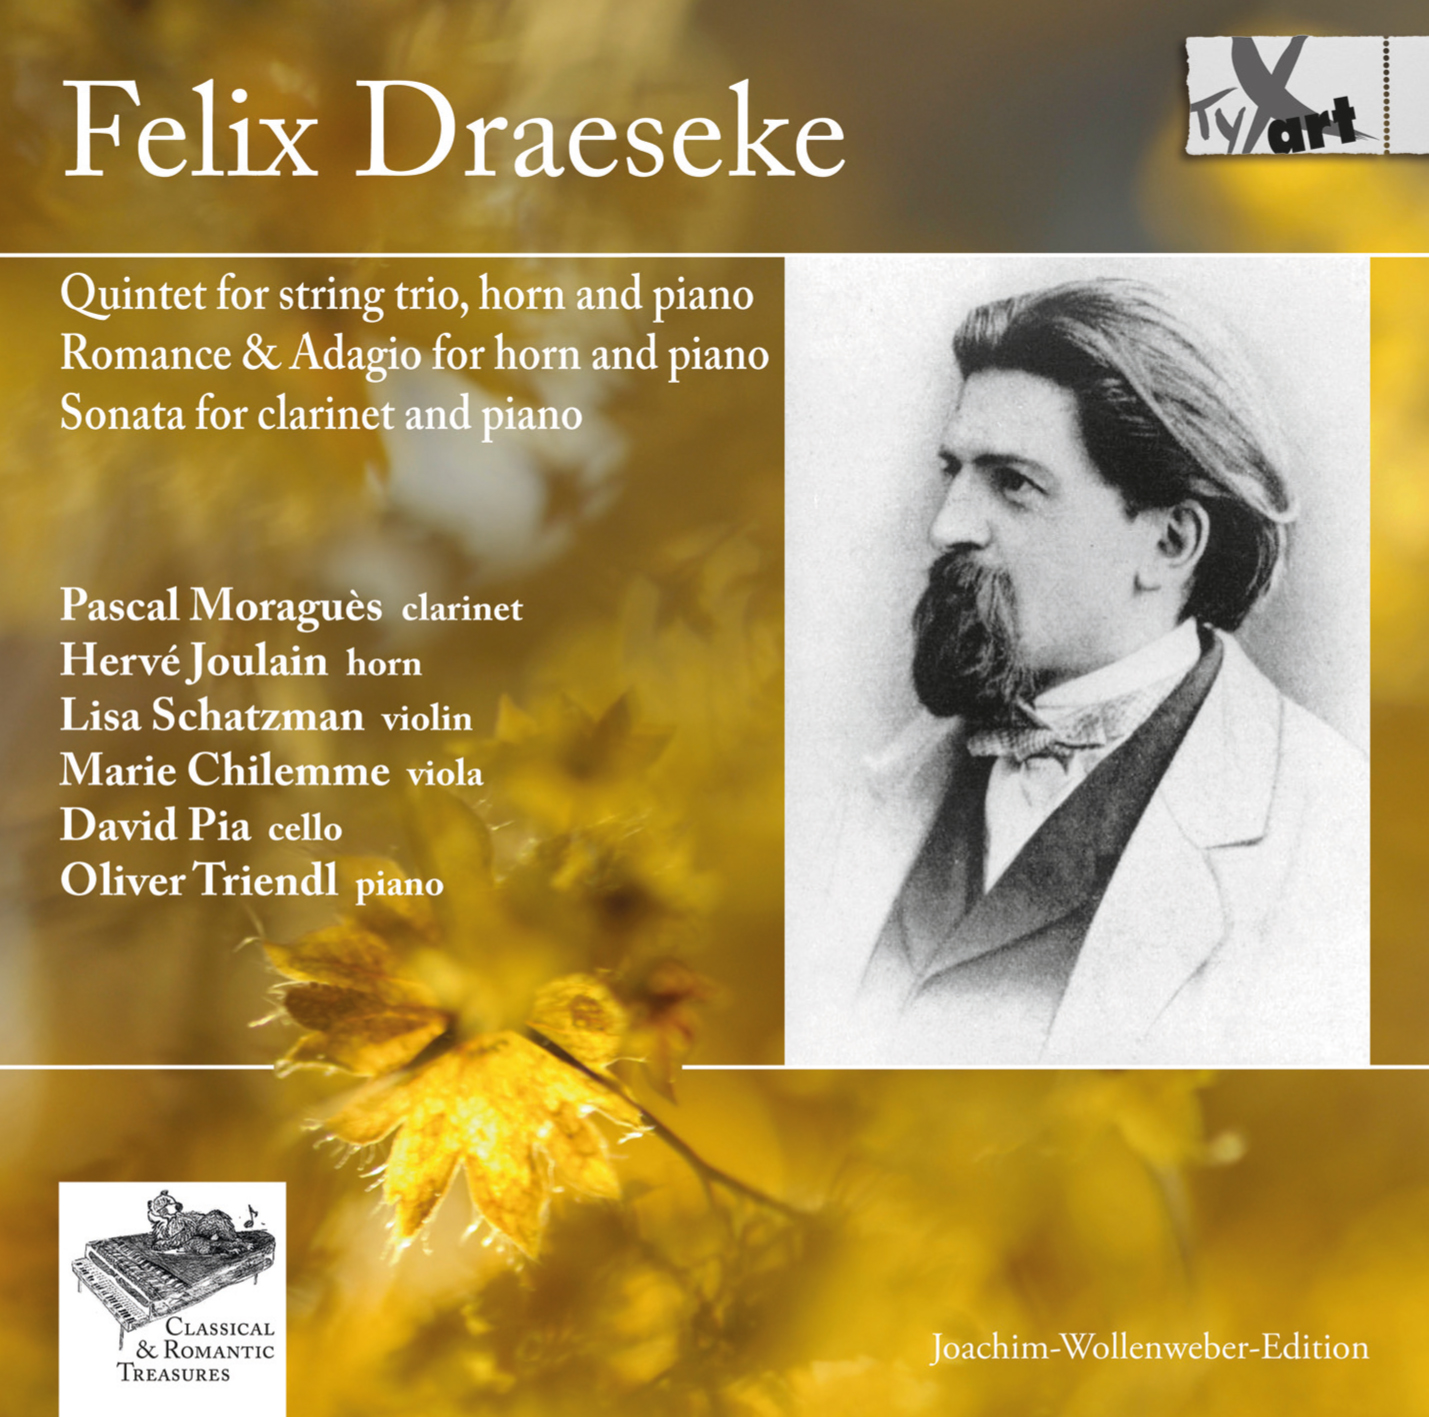 Felix Draeseke: Chamber Music Works Op.48, Op.32, Op.31 and Op.38